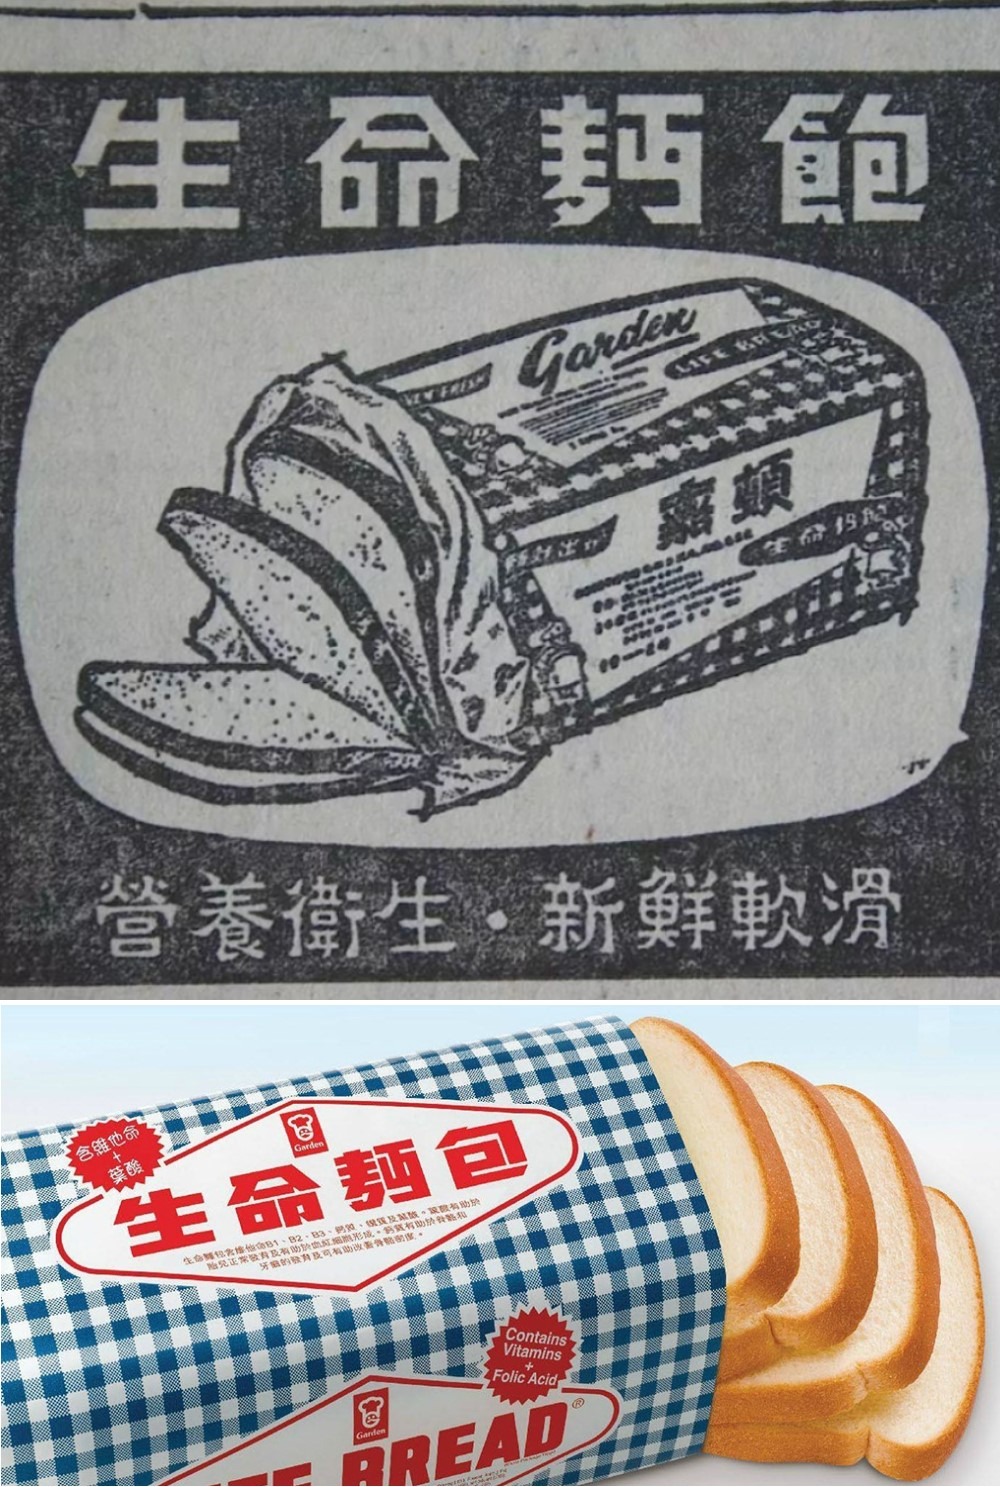 嘉頓是本地第一家食品公司採用蠟紙包裝，藍白格仔設計的蠟紙極具代表性，防潮之餘亦可保持麵包鬆軟。上圖為60年代嘉頓報紙廣告。（網上圖片）